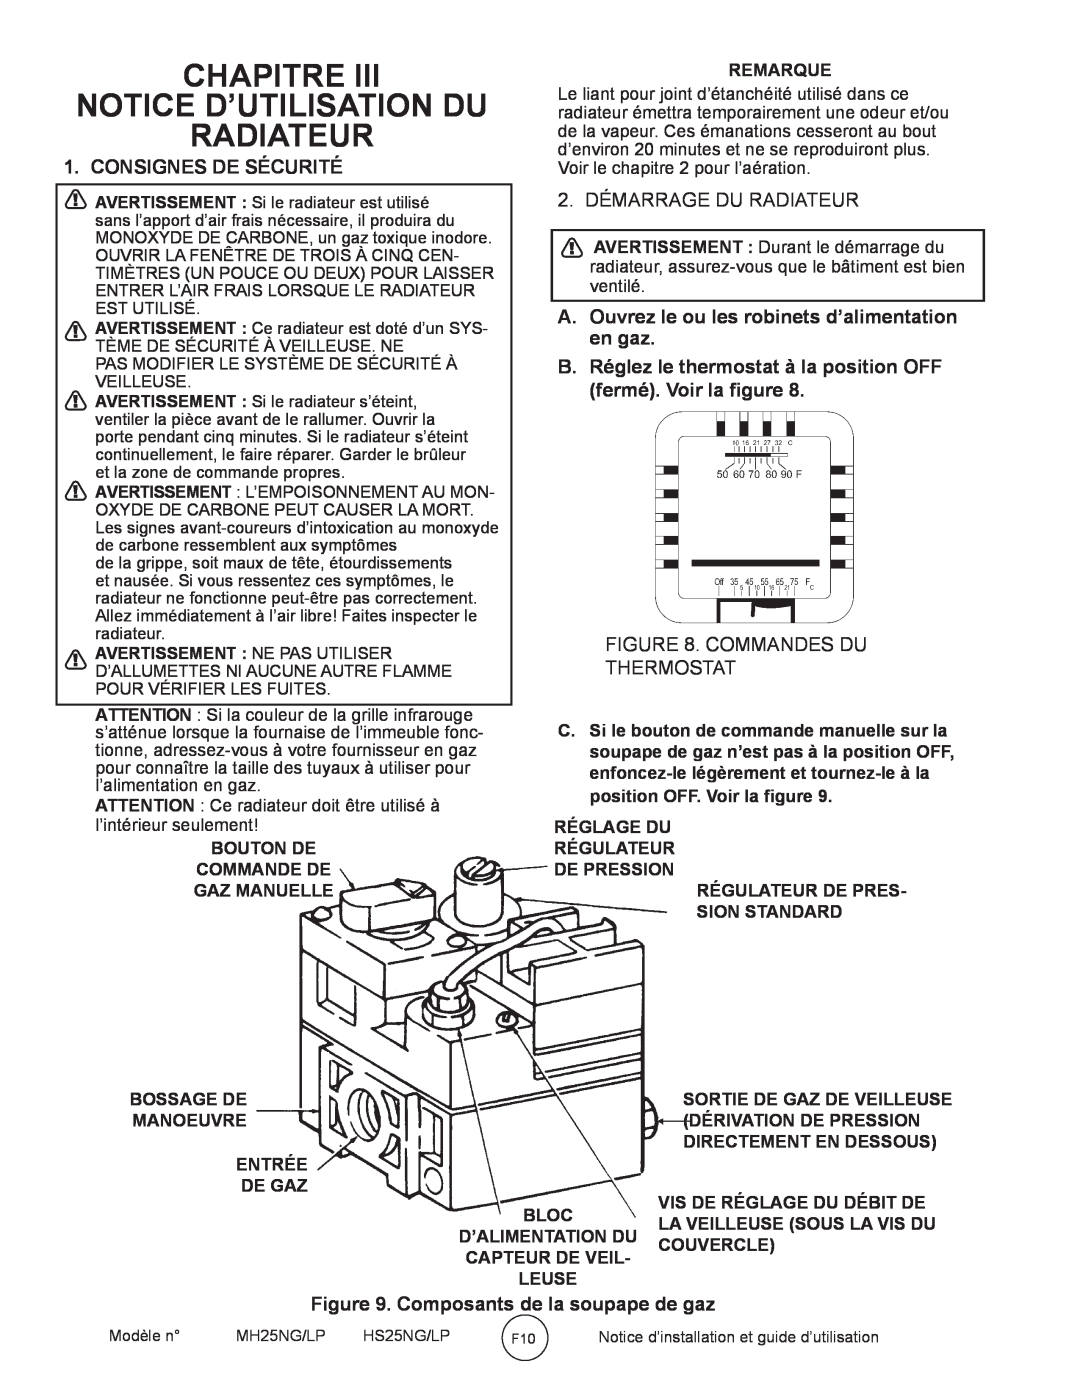 Mr. Heater MH25NG/LP Chapitre Notice D’Utilisation Du Radiateur, Consignes De Sécurité, 2. DÉMARRAGE DU RADIATEUR 